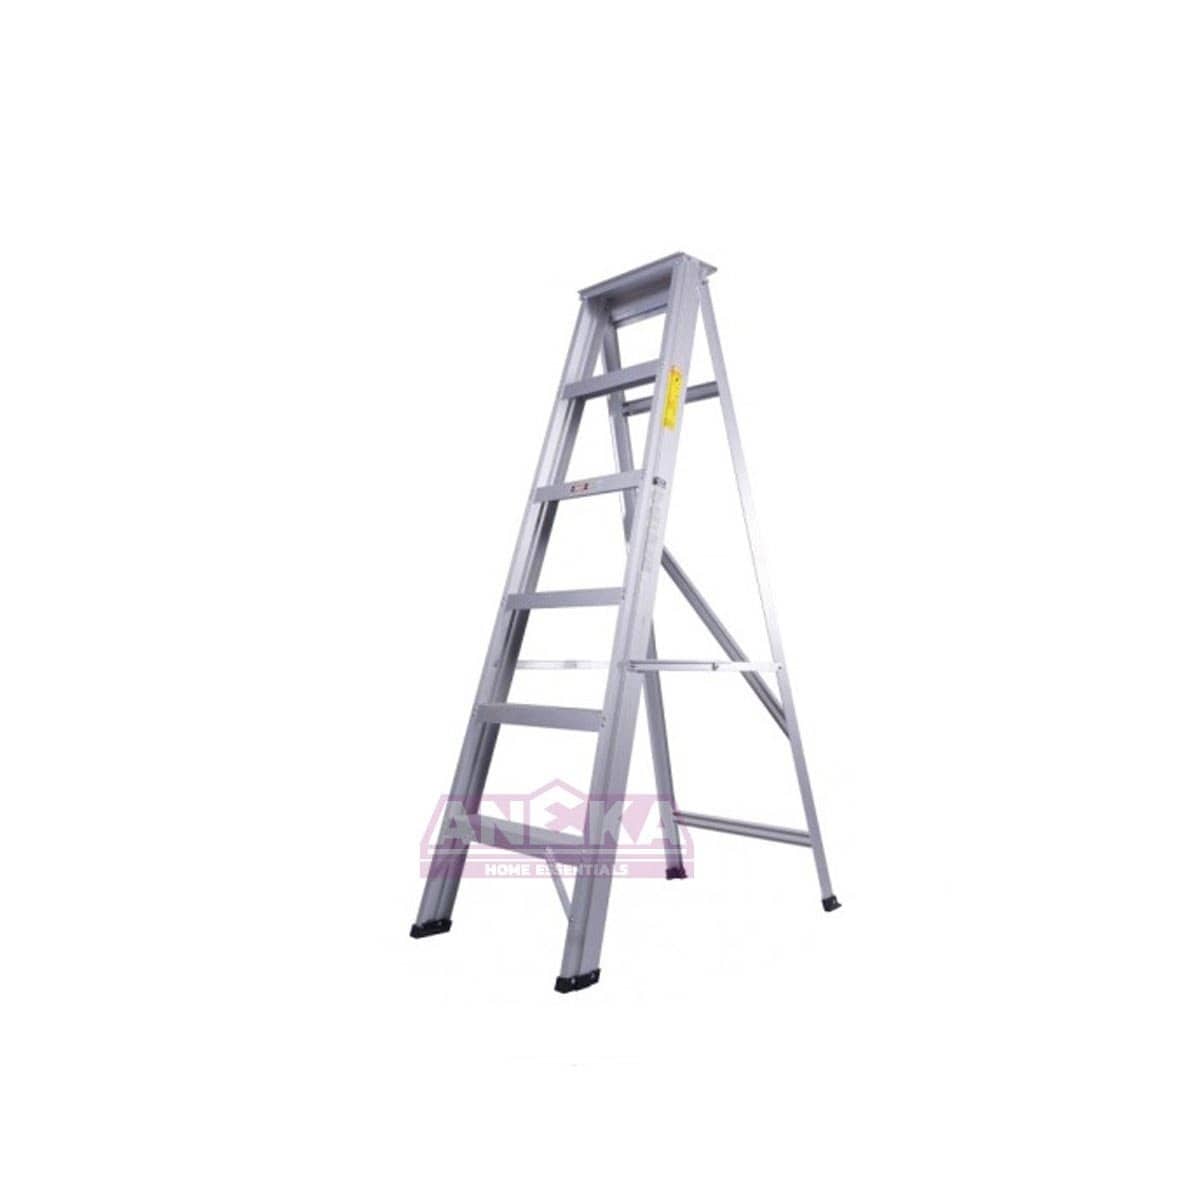 SUMO KING Heavy Duty Single Sided Ladder (5 STEPS)